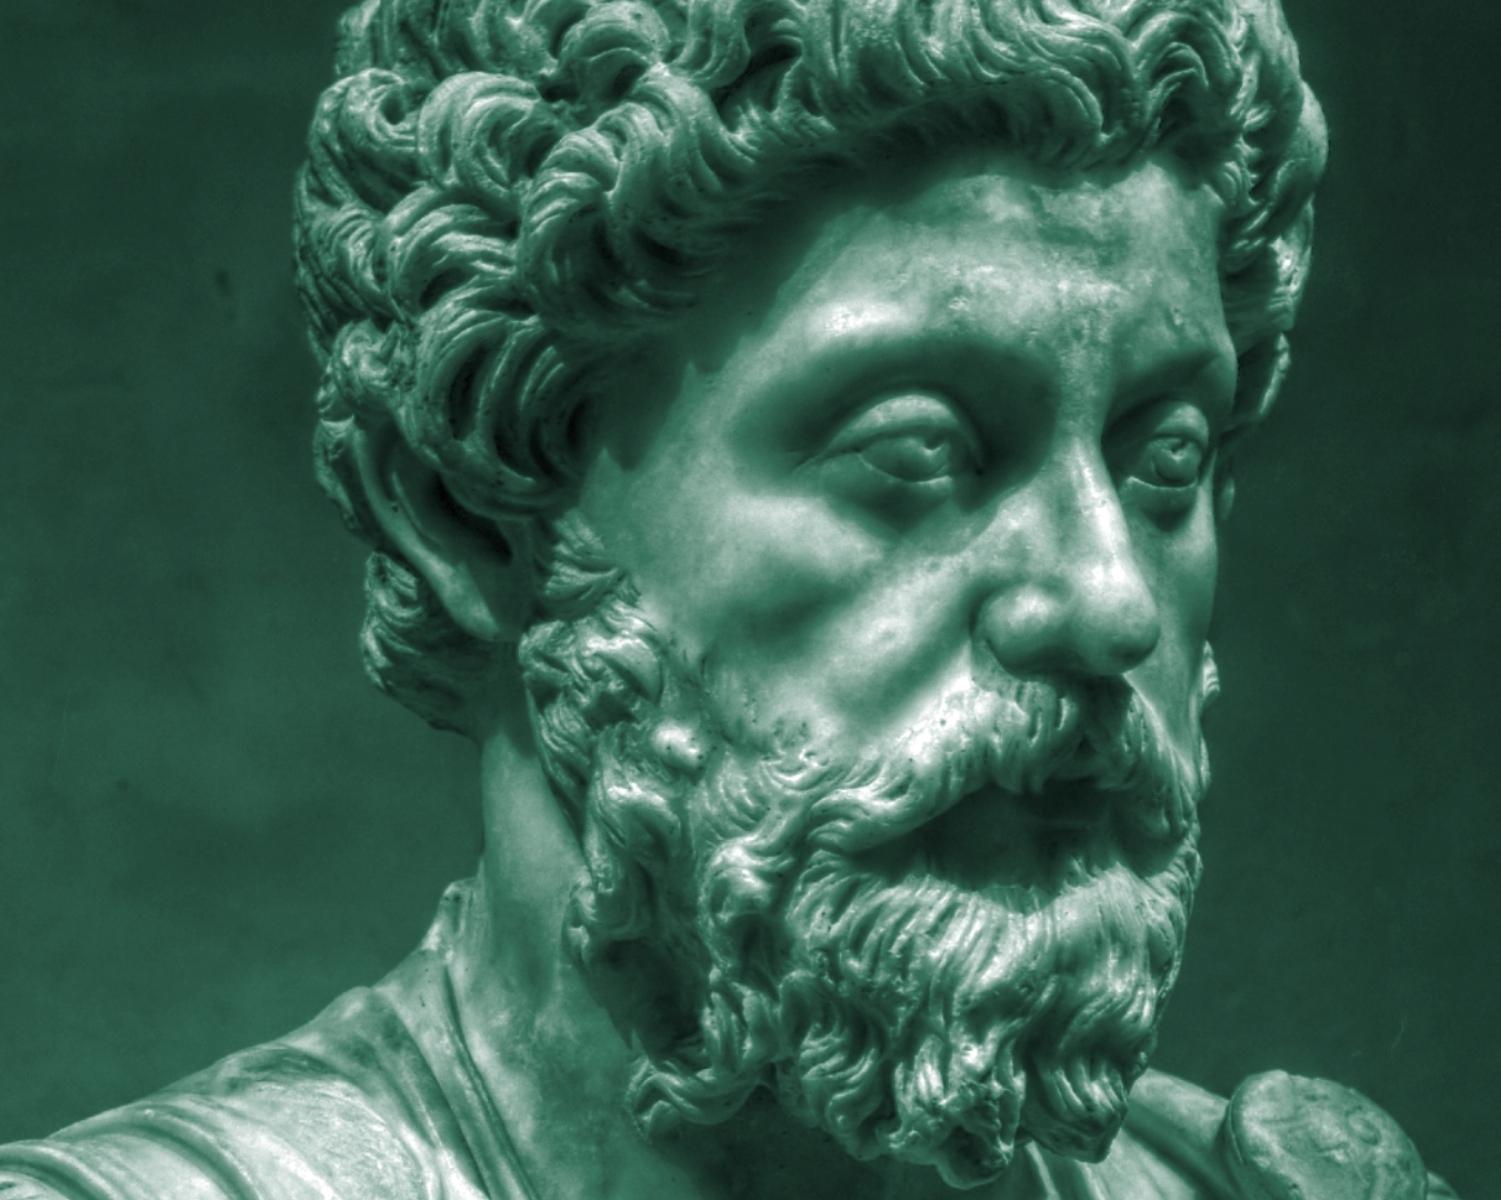 Who is Marcus Aurelius?